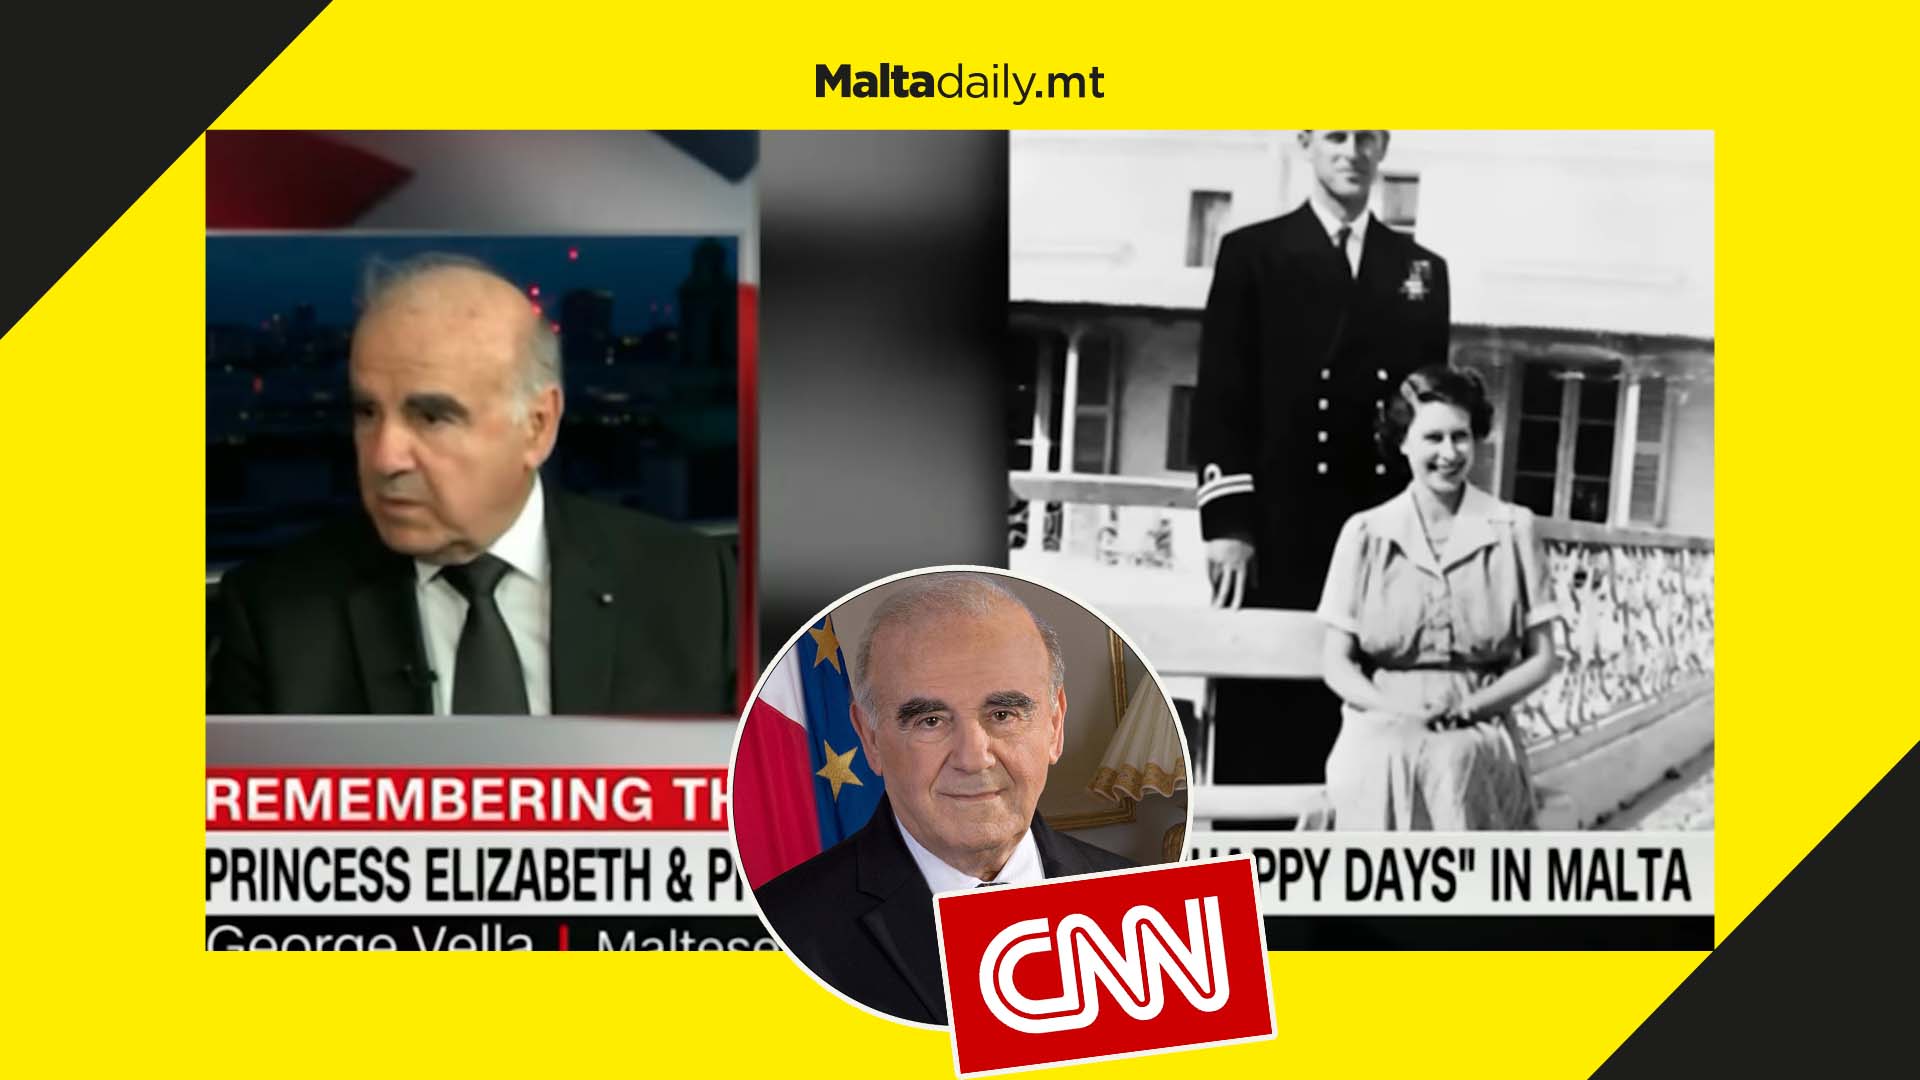 Malta’s president interviewed on CNN about Queen Elizabeth